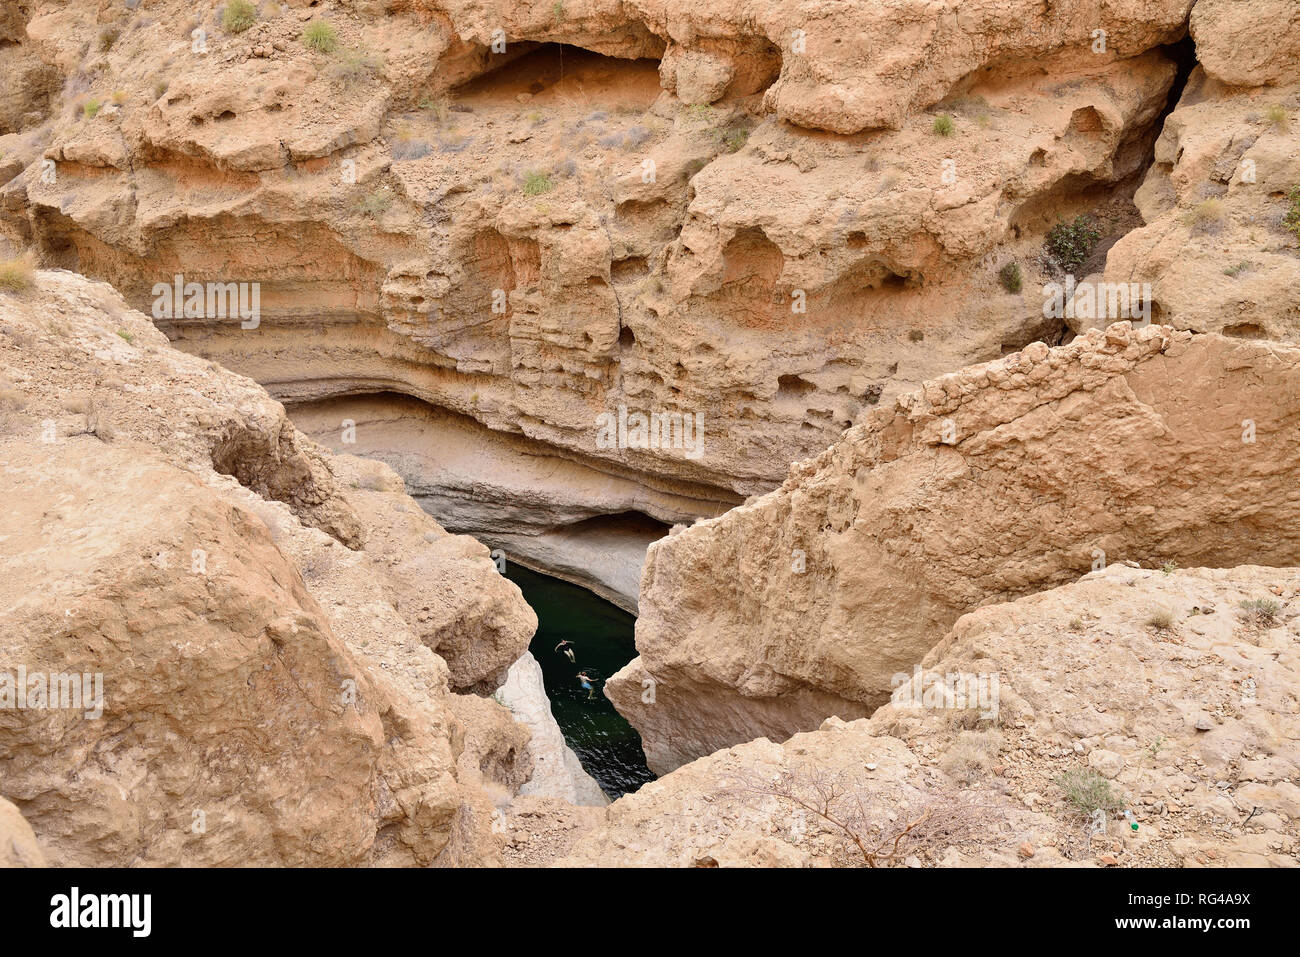 Les touristes de prendre un bain avec de l'eau vert émeraude sur le Wadi Shab. Cette vallée est un des plus étonnants en Oman Banque D'Images